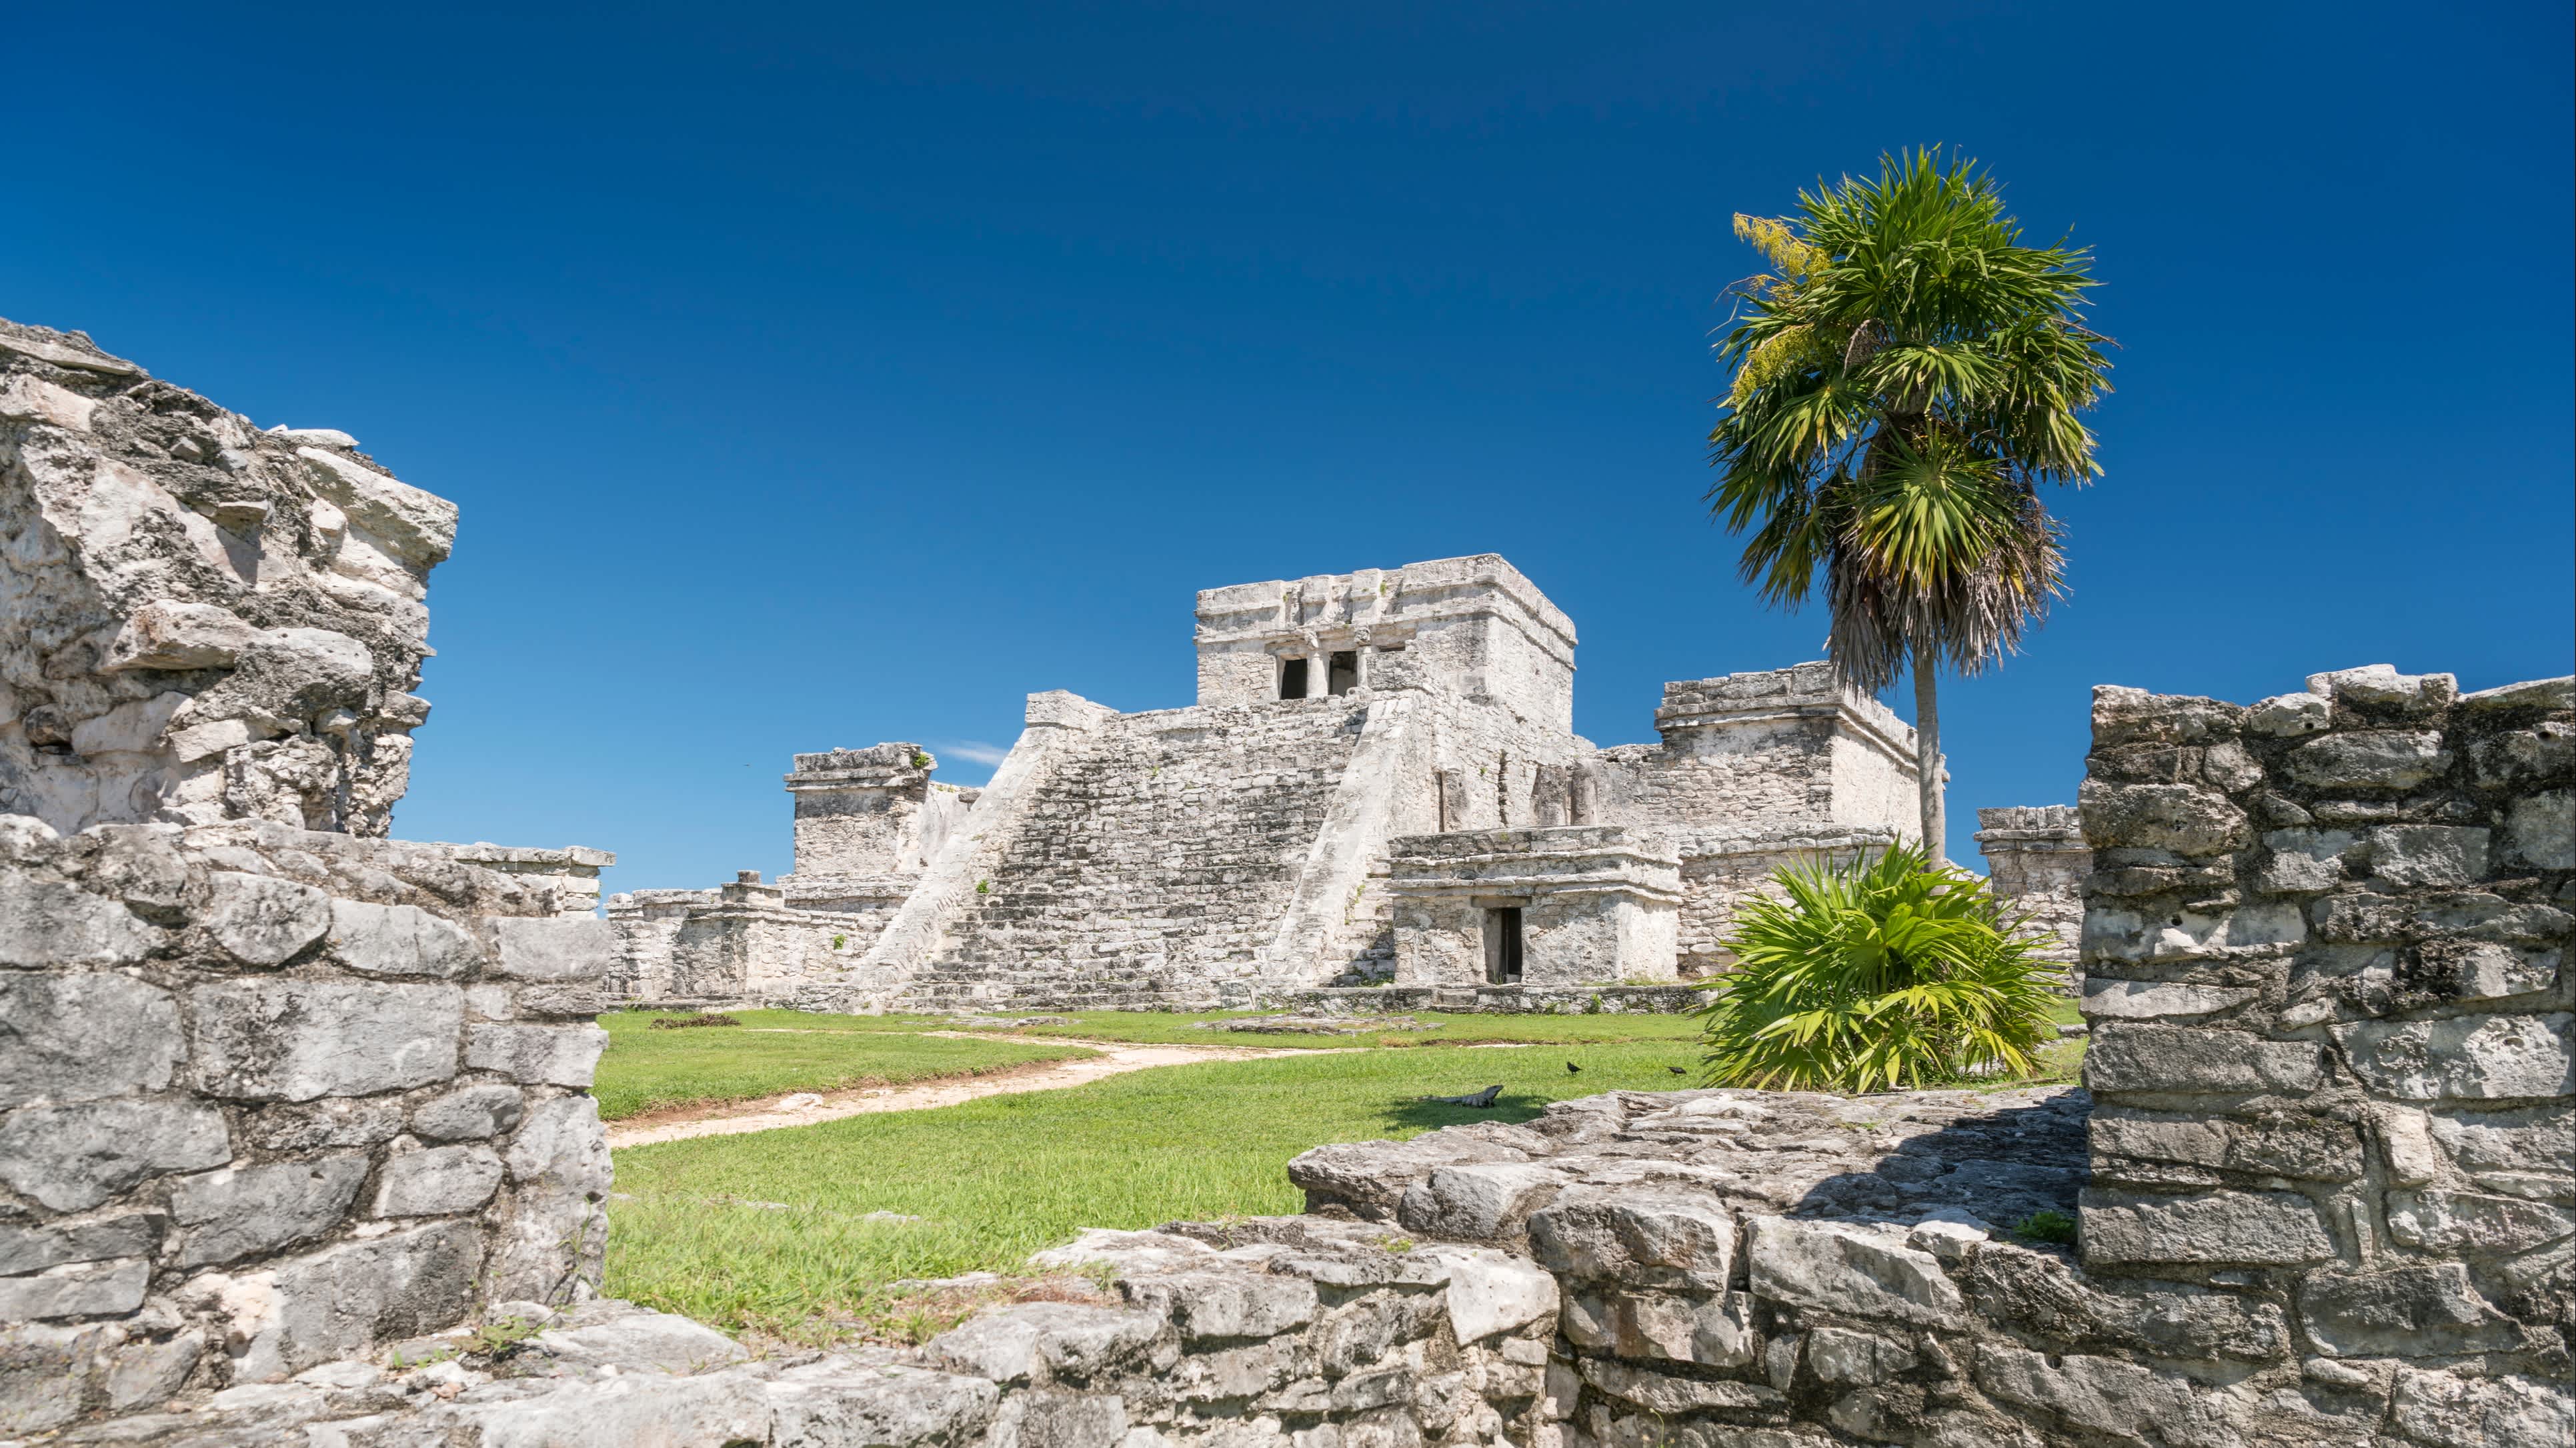 View of the Maya ruin El Castillo in Tulum Mexico